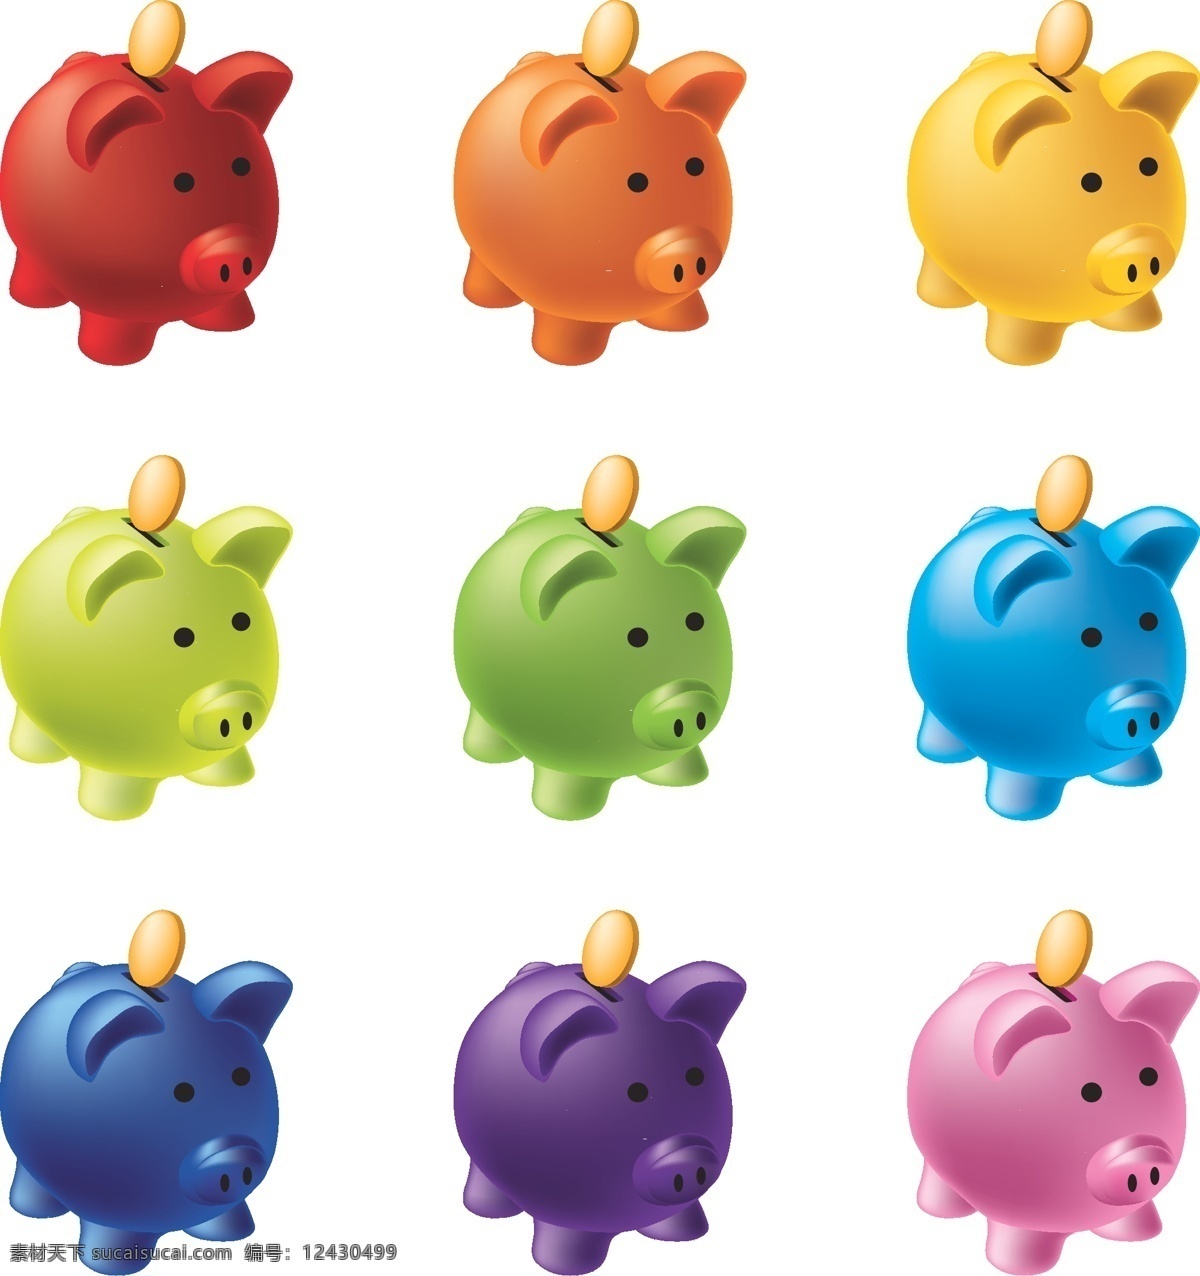 彩色 小 猪 储蓄罐 矢量 小猪 存钱罐 金币 金钱 动物 家畜 装饰 卡片 插画 背景 海报 画册